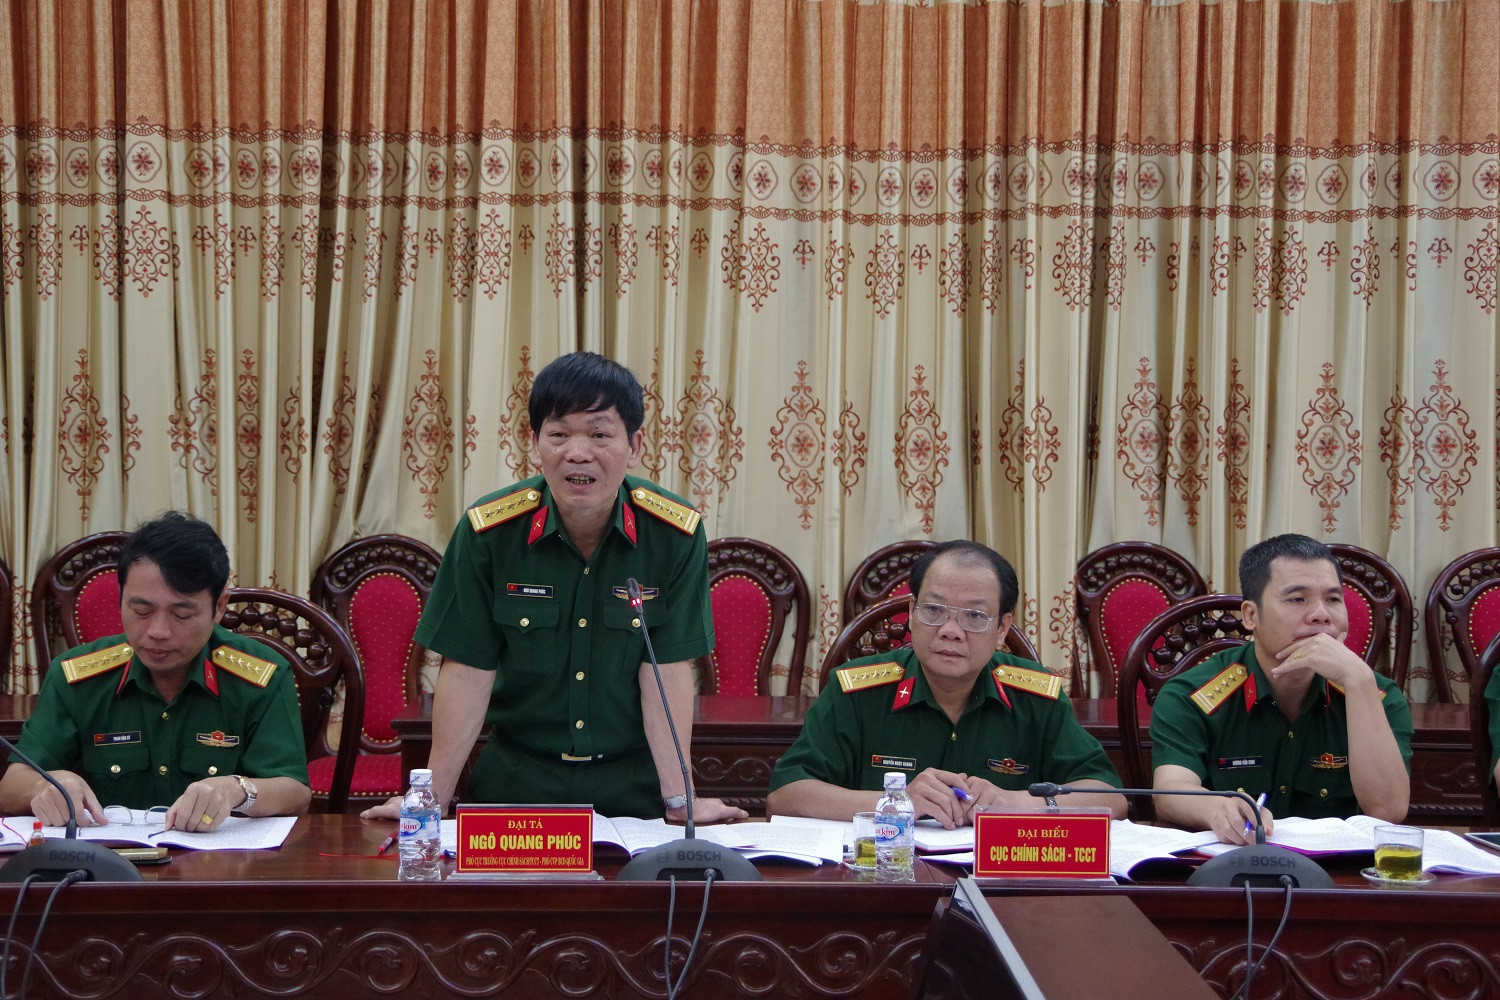 Đại tá Ngô Quang Phúc - Phó Cục trưởng Cục chính sách, Phó Chánh văn phòng Ban chỉ đạo Quốc gia 515 phát biểu tại buổi kiểm tra. Ảnh: Phong Quang